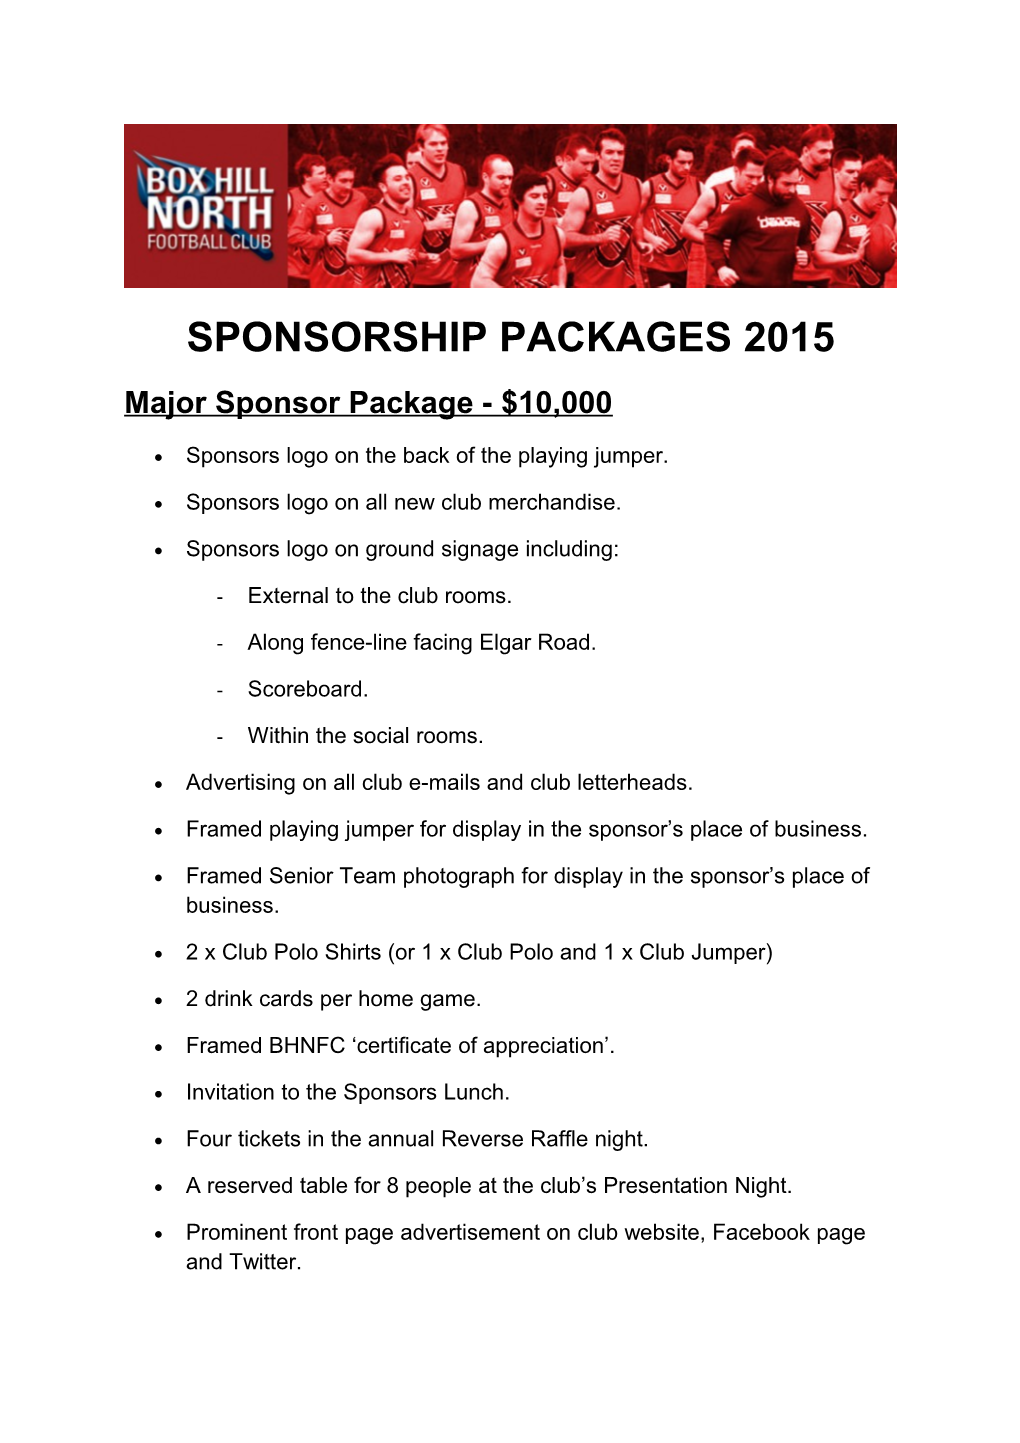 Major Sponsorpackage - $10,000